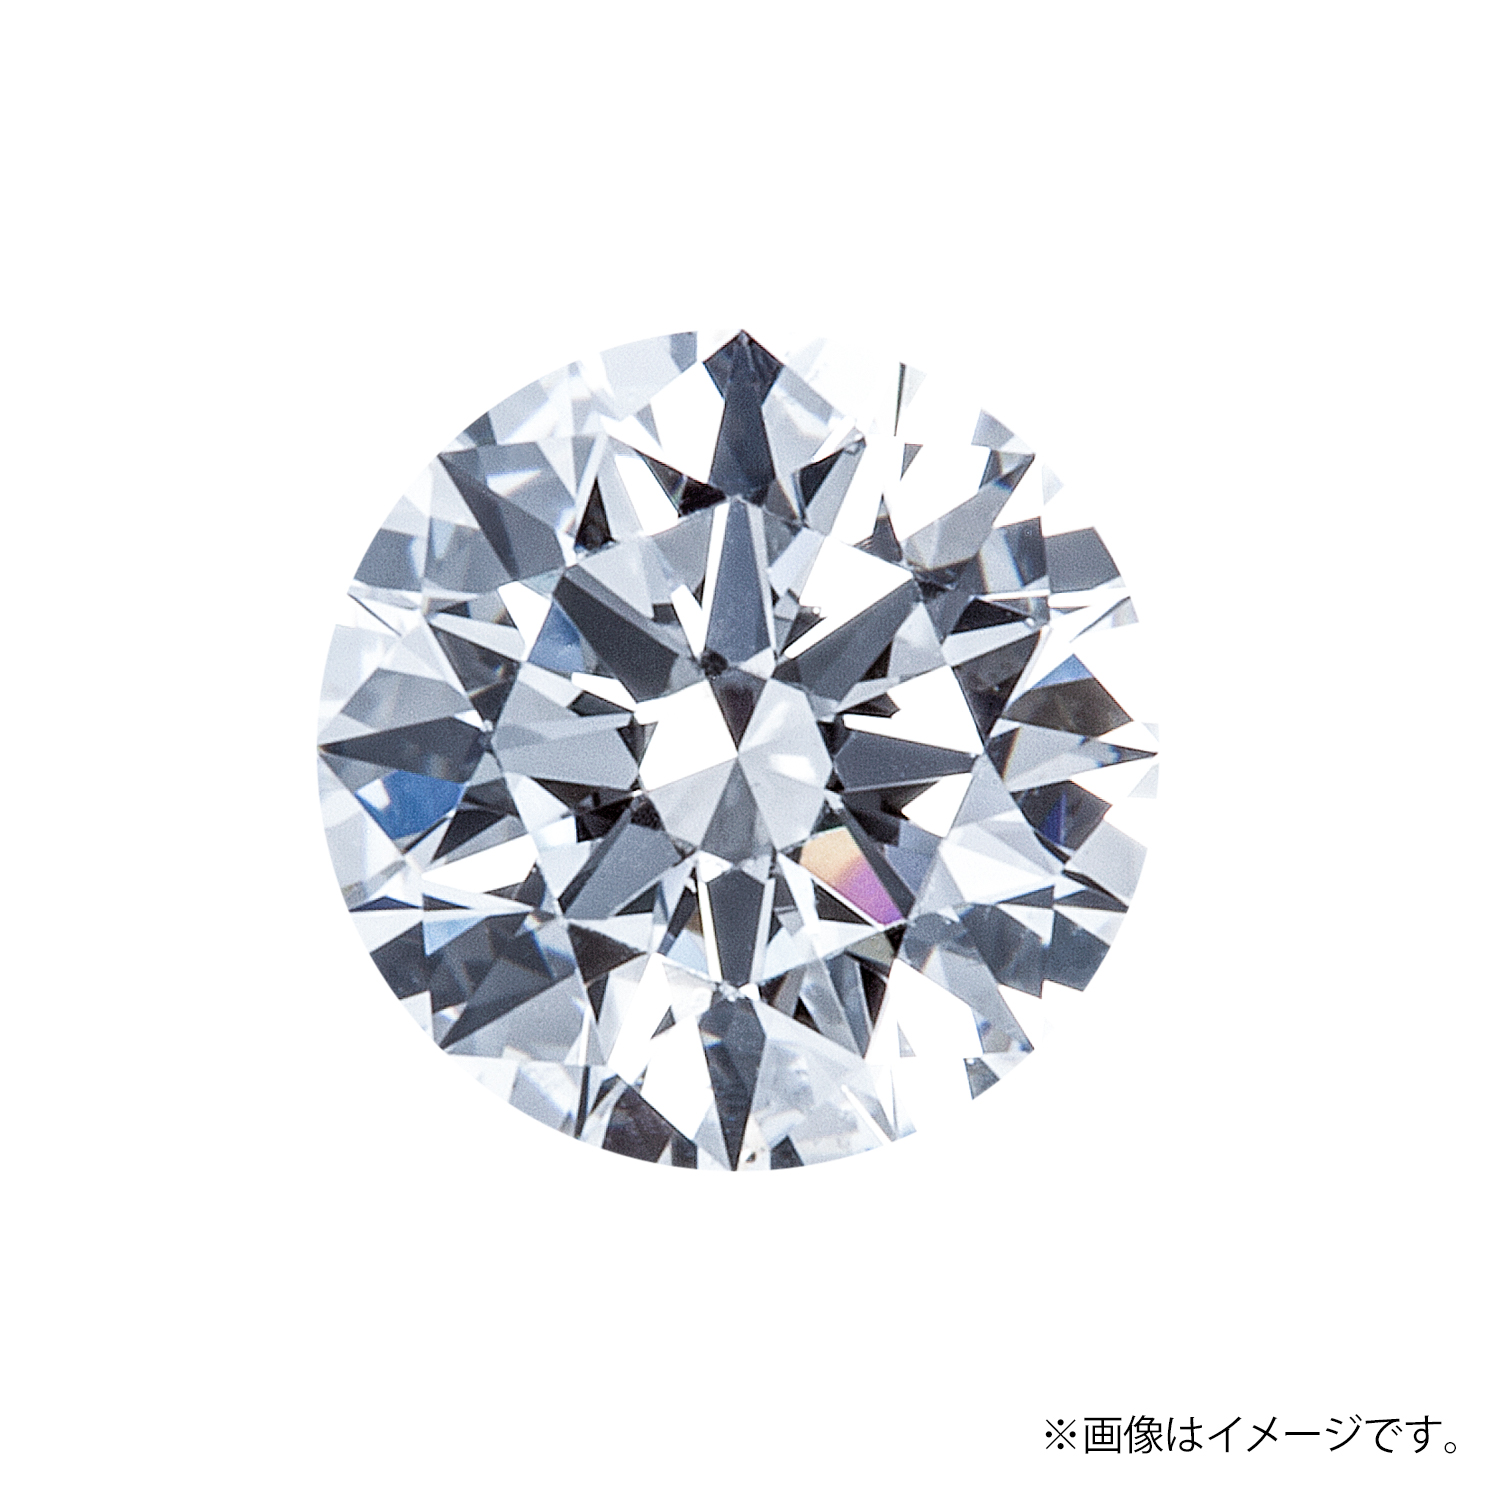 0.251ct Round ダイヤモンド / G / SI1 / 3EX-H&C